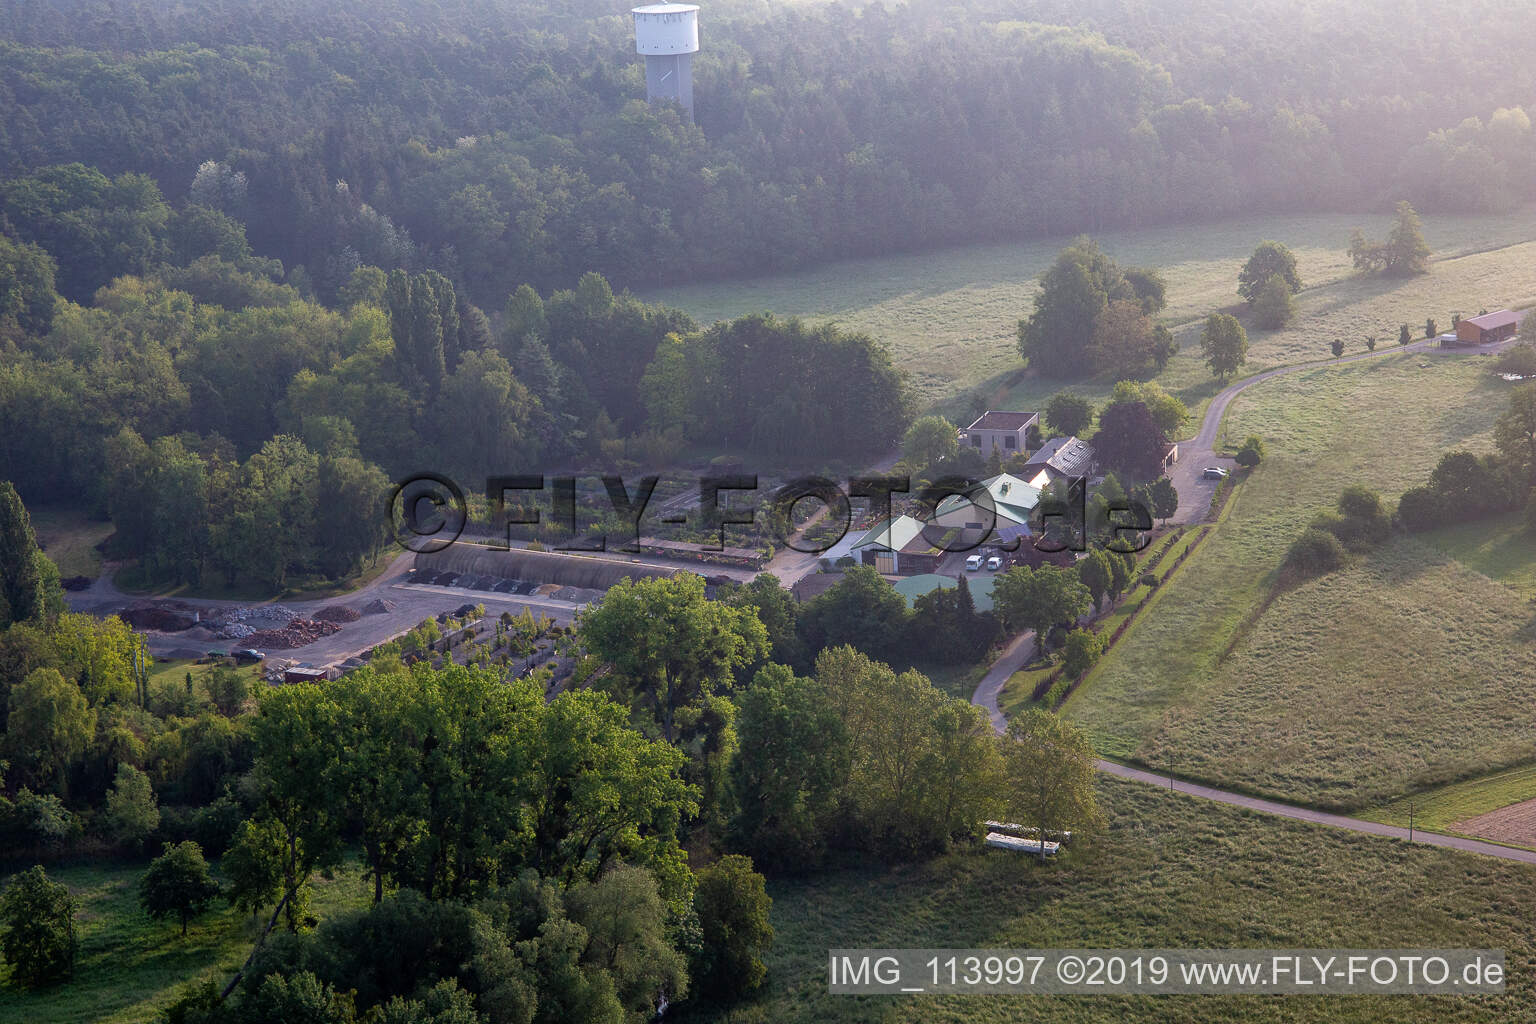 Aerial view of Bienwald tree nursery / Greentec in Berg in the state Rhineland-Palatinate, Germany